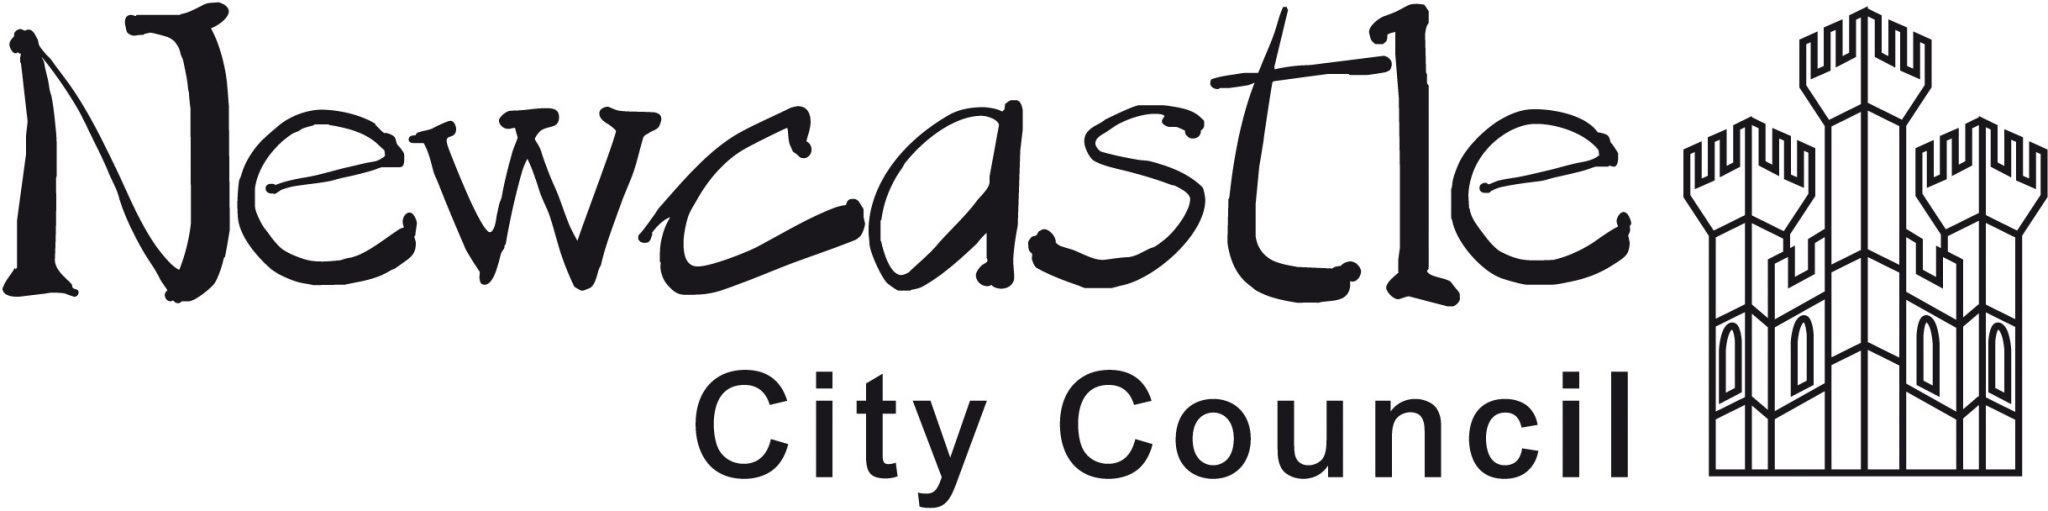 newcastle-city-council-logo